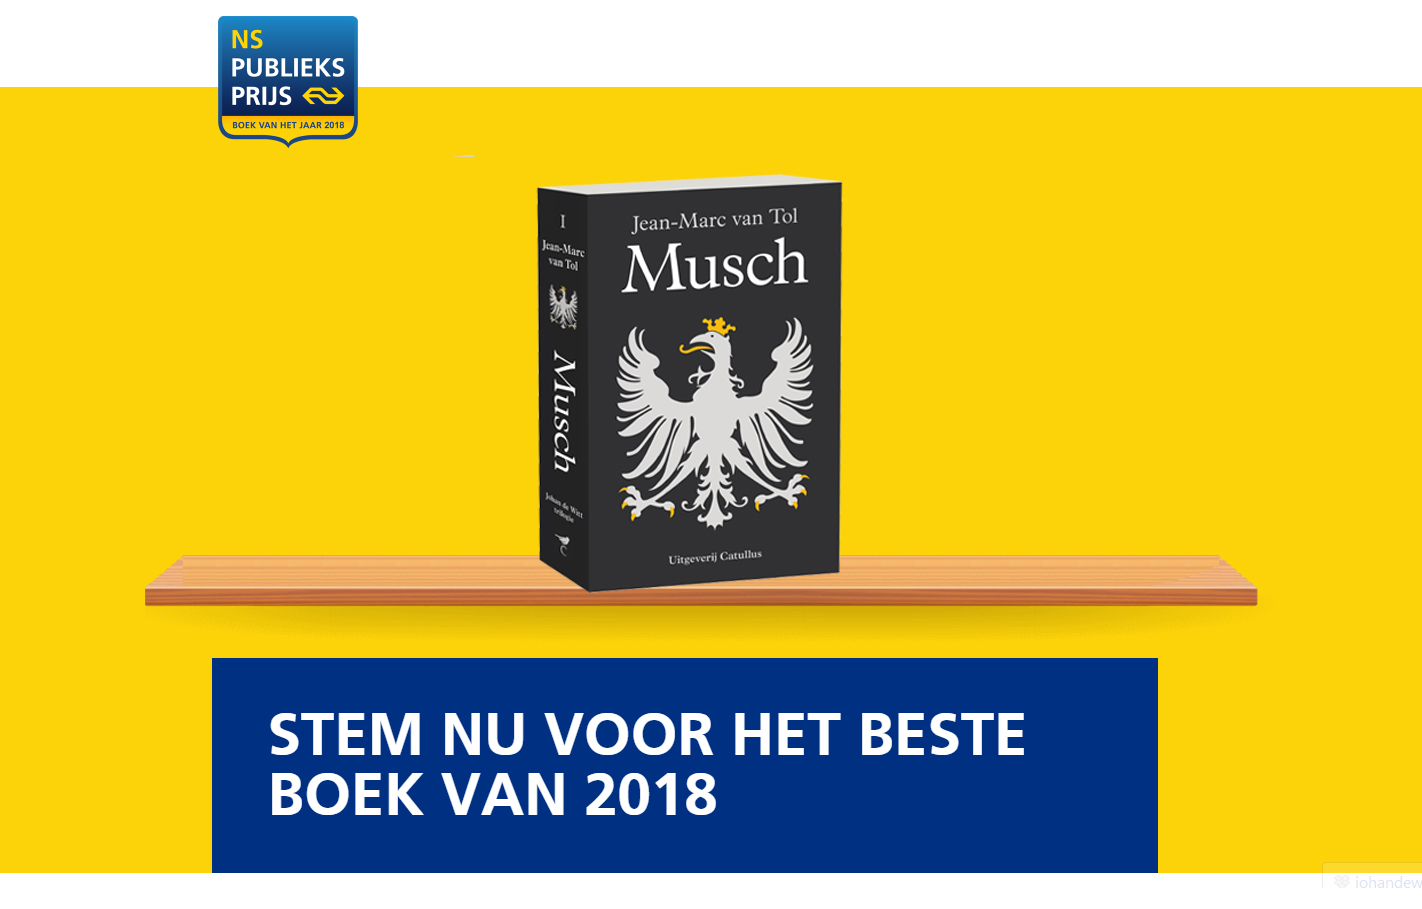 Klink en stem: https://www.nspublieksprijs.nl/stemmen/custom